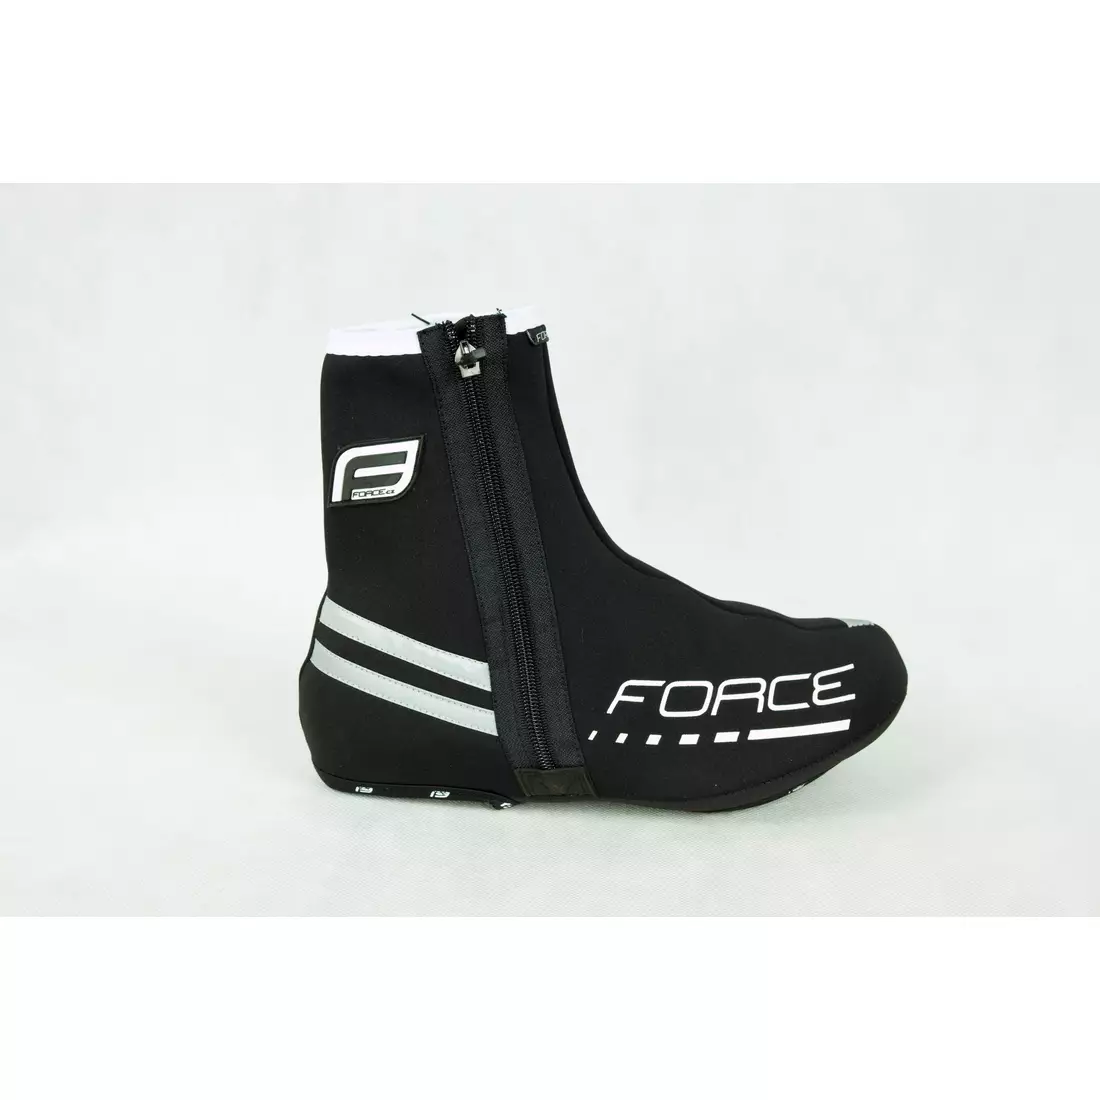 FORCE - 90595 - silniční návleky na boty, 2mm neopren